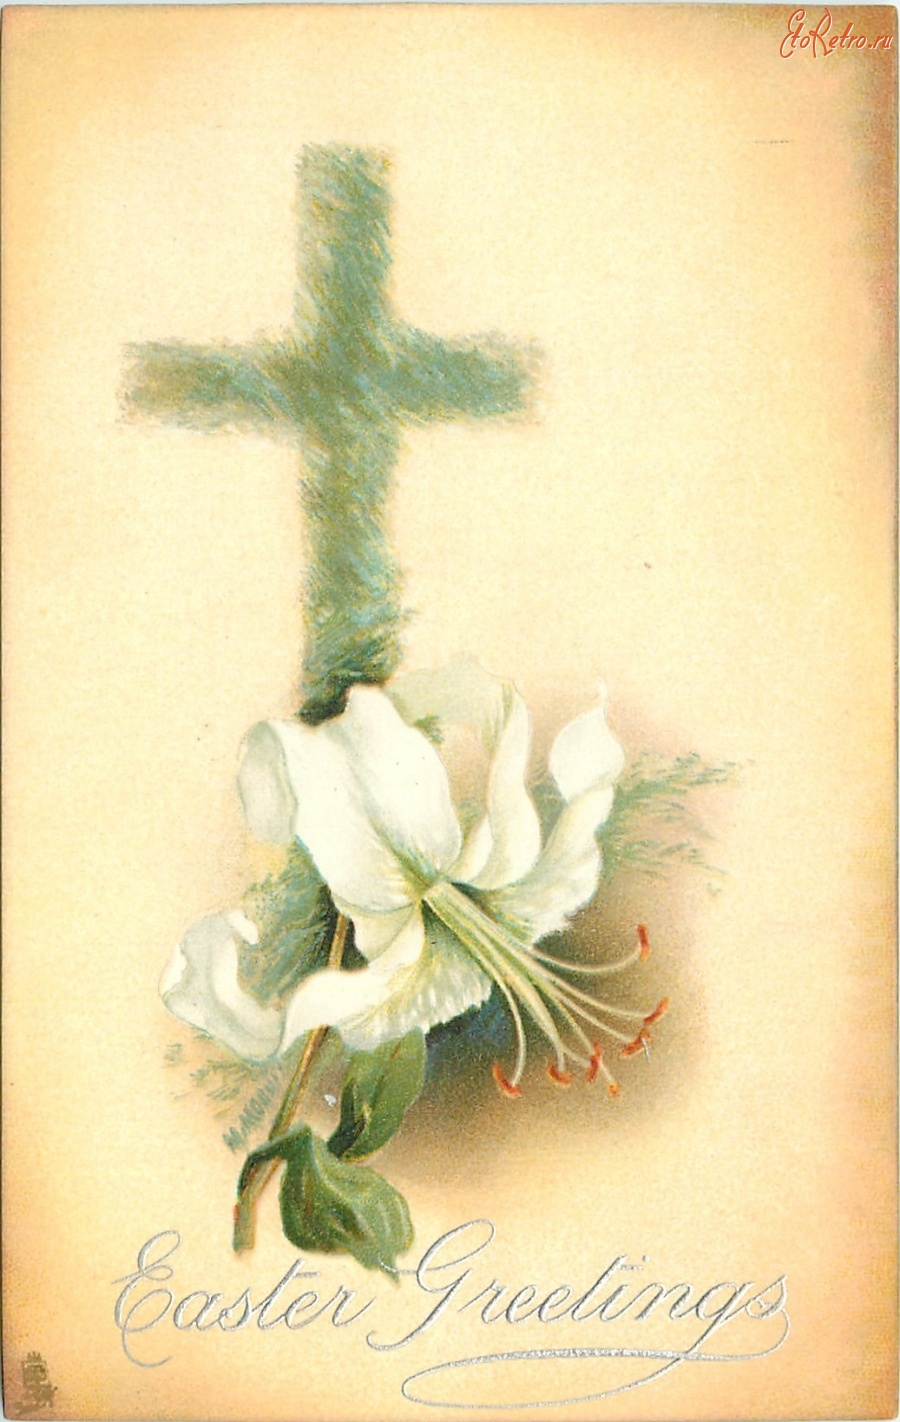 Ретро открытки - Пасхальные поздравления. Белая лилия и крест из луговых трав